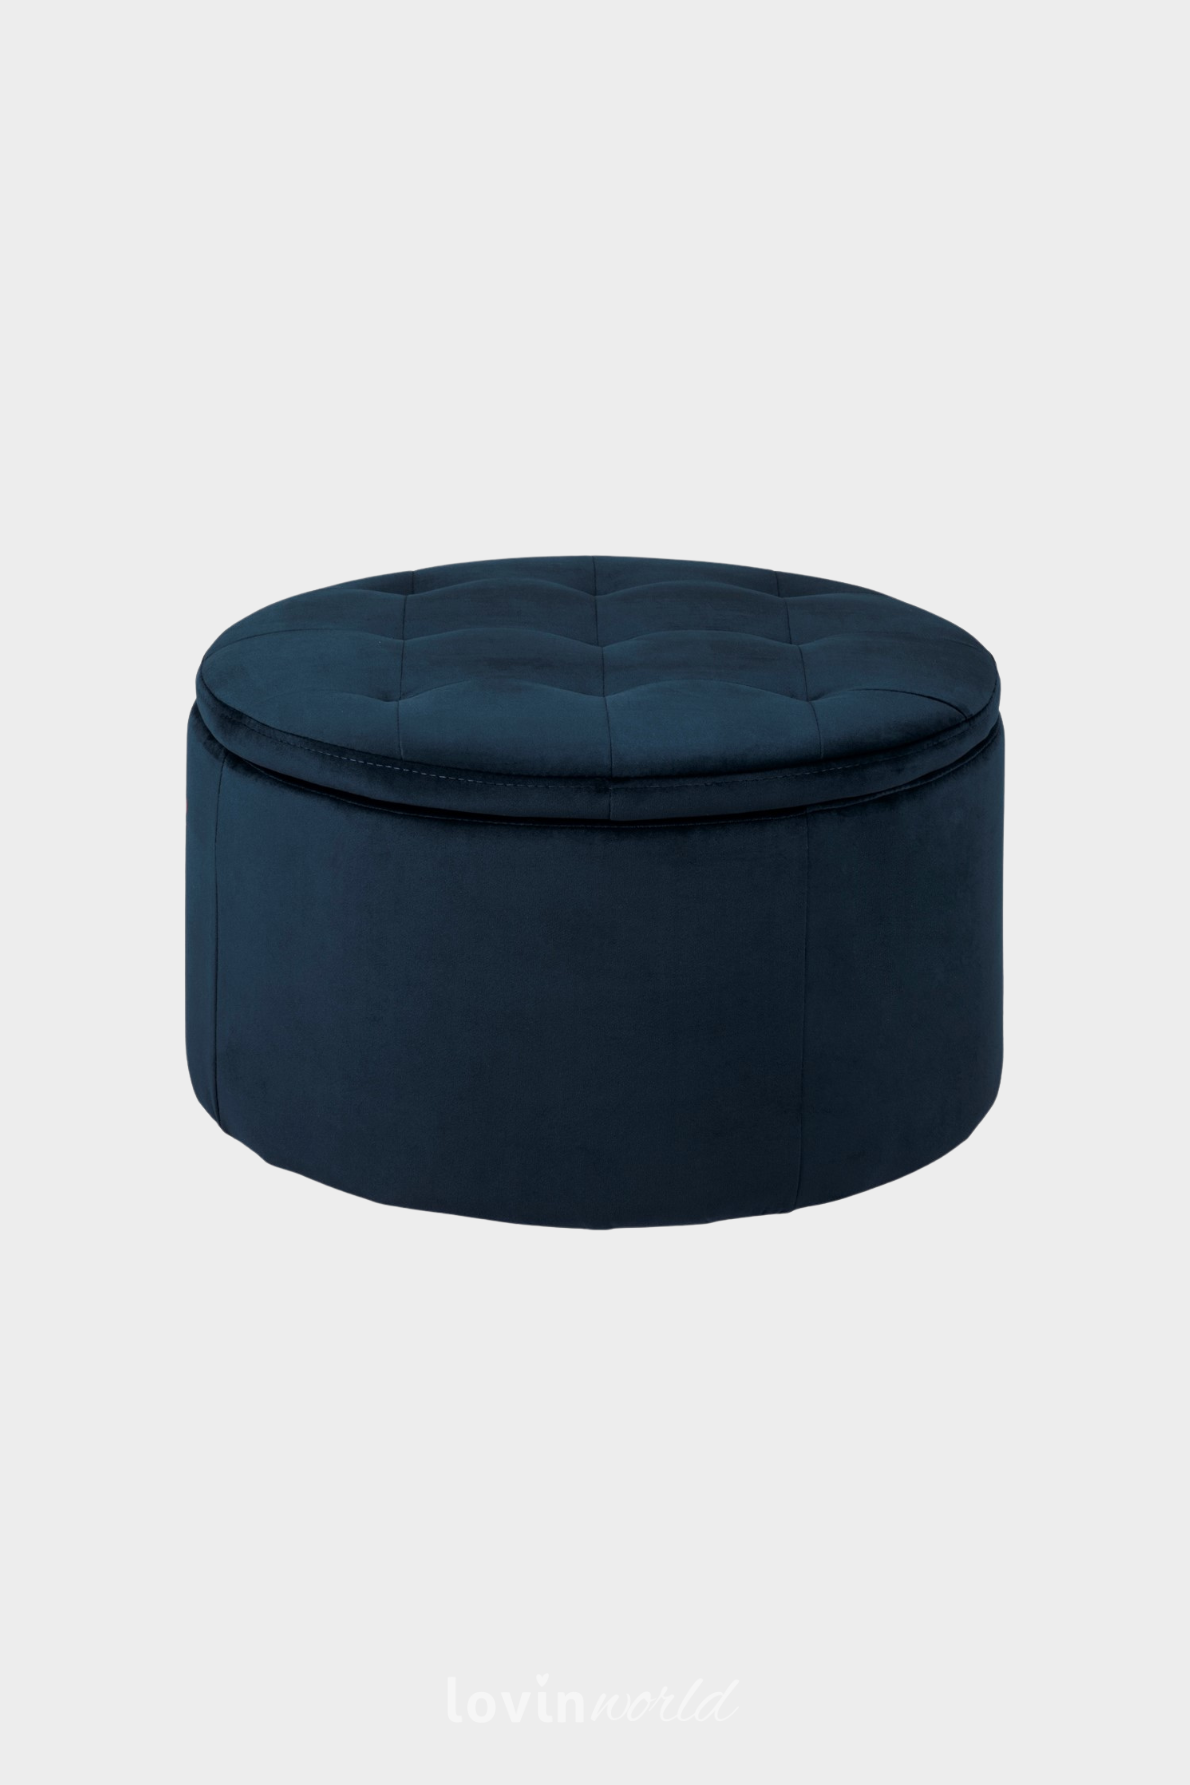 Pouf contenitore Worry, in colore blu 35x60 cm.-1